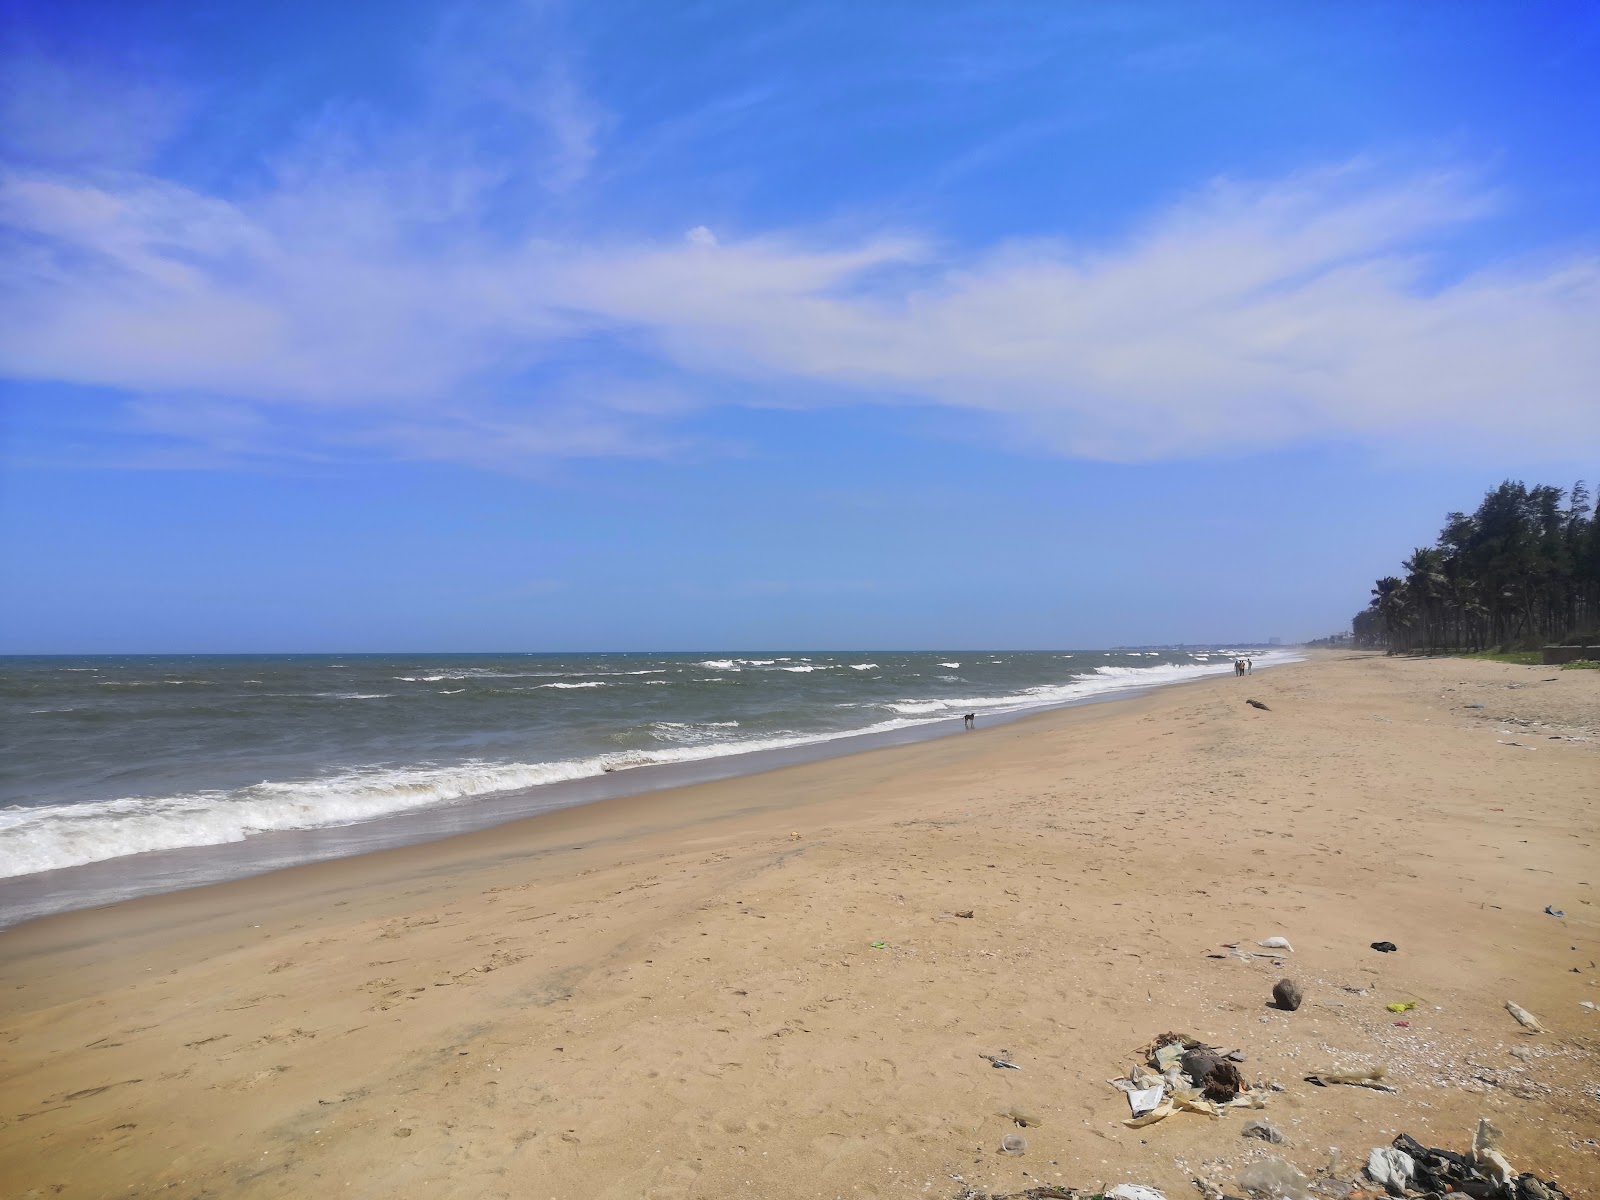 Photo de Kanathur Beach - endroit populaire parmi les connaisseurs de la détente